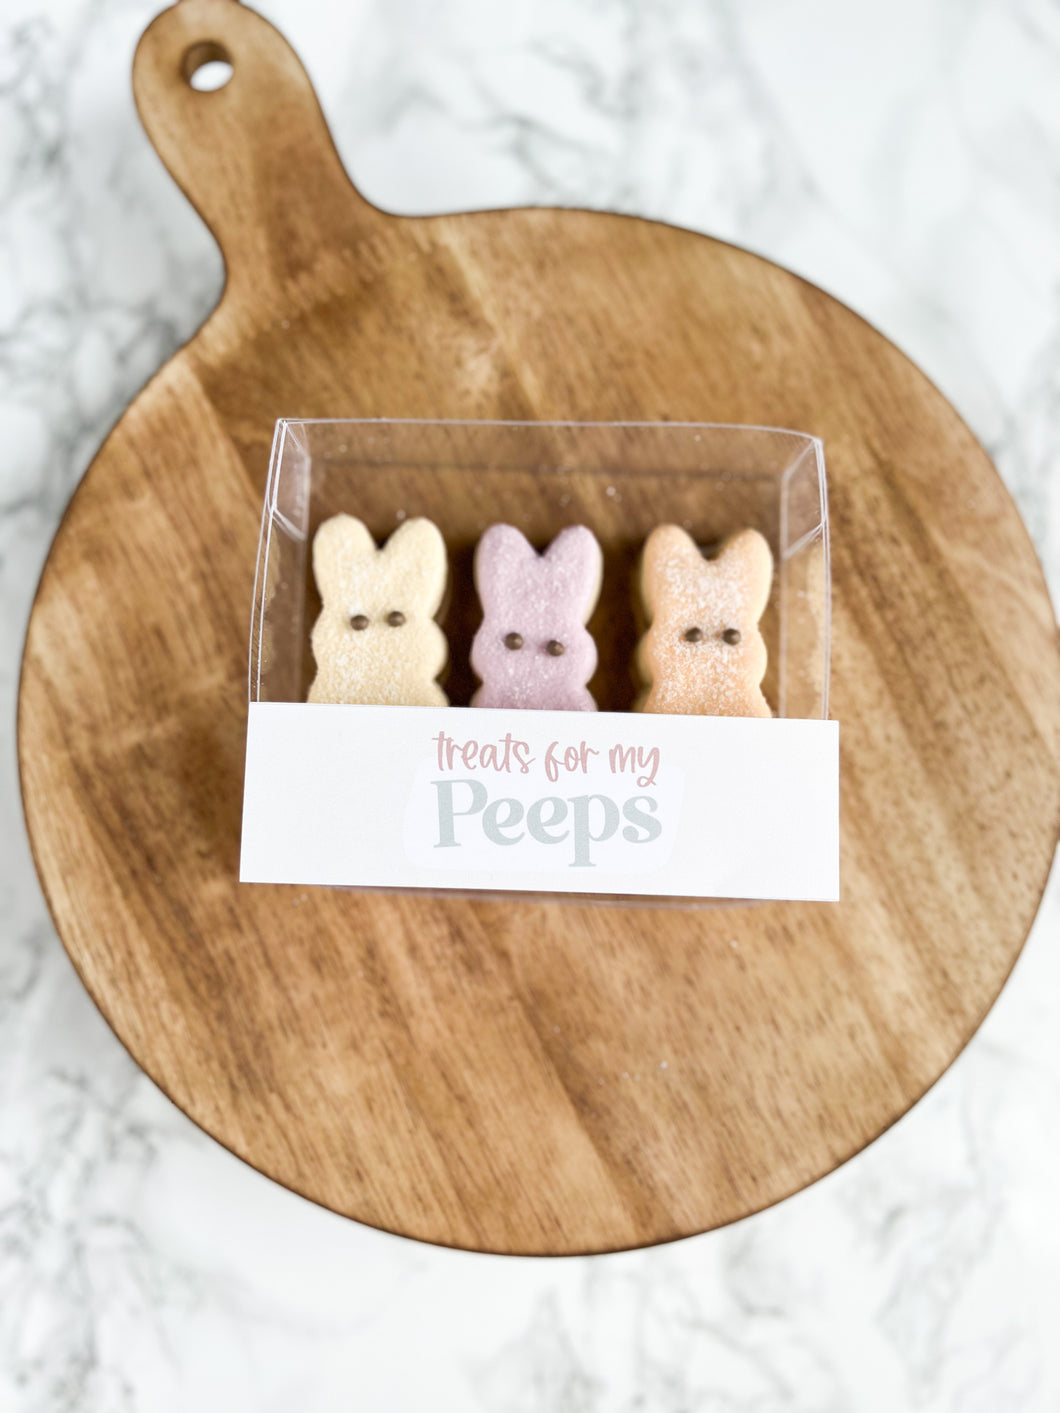 Three mini Peeps cookies